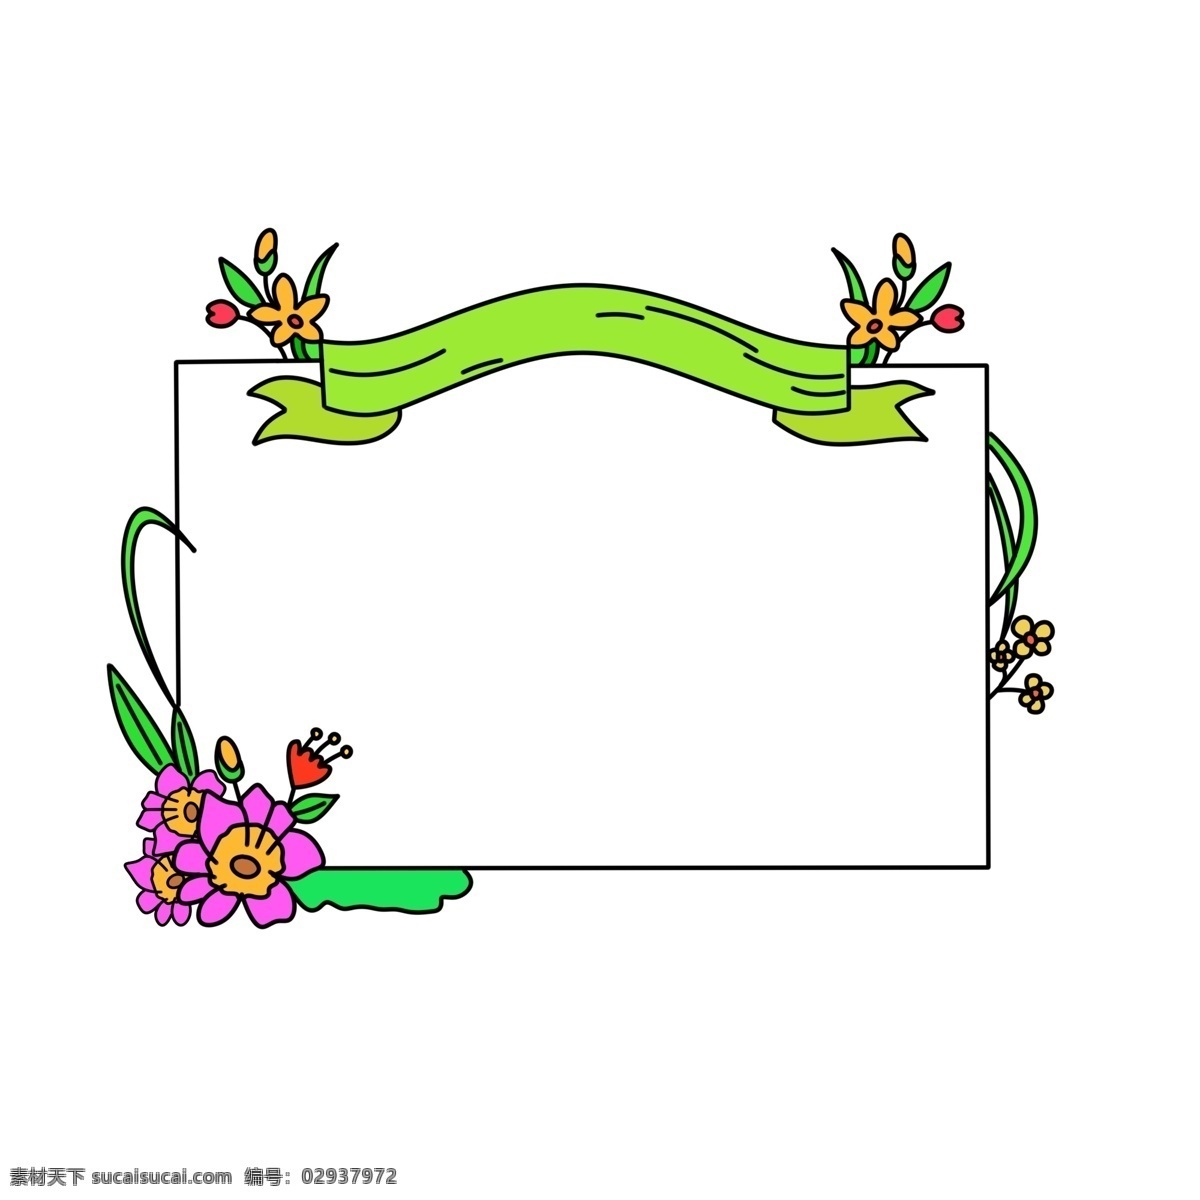 春季 促销 丝带 边框 春季促销边框 绿色丝带 花朵装饰 丝带装饰 春季植物 大自然植物 热卖边框 销售边框